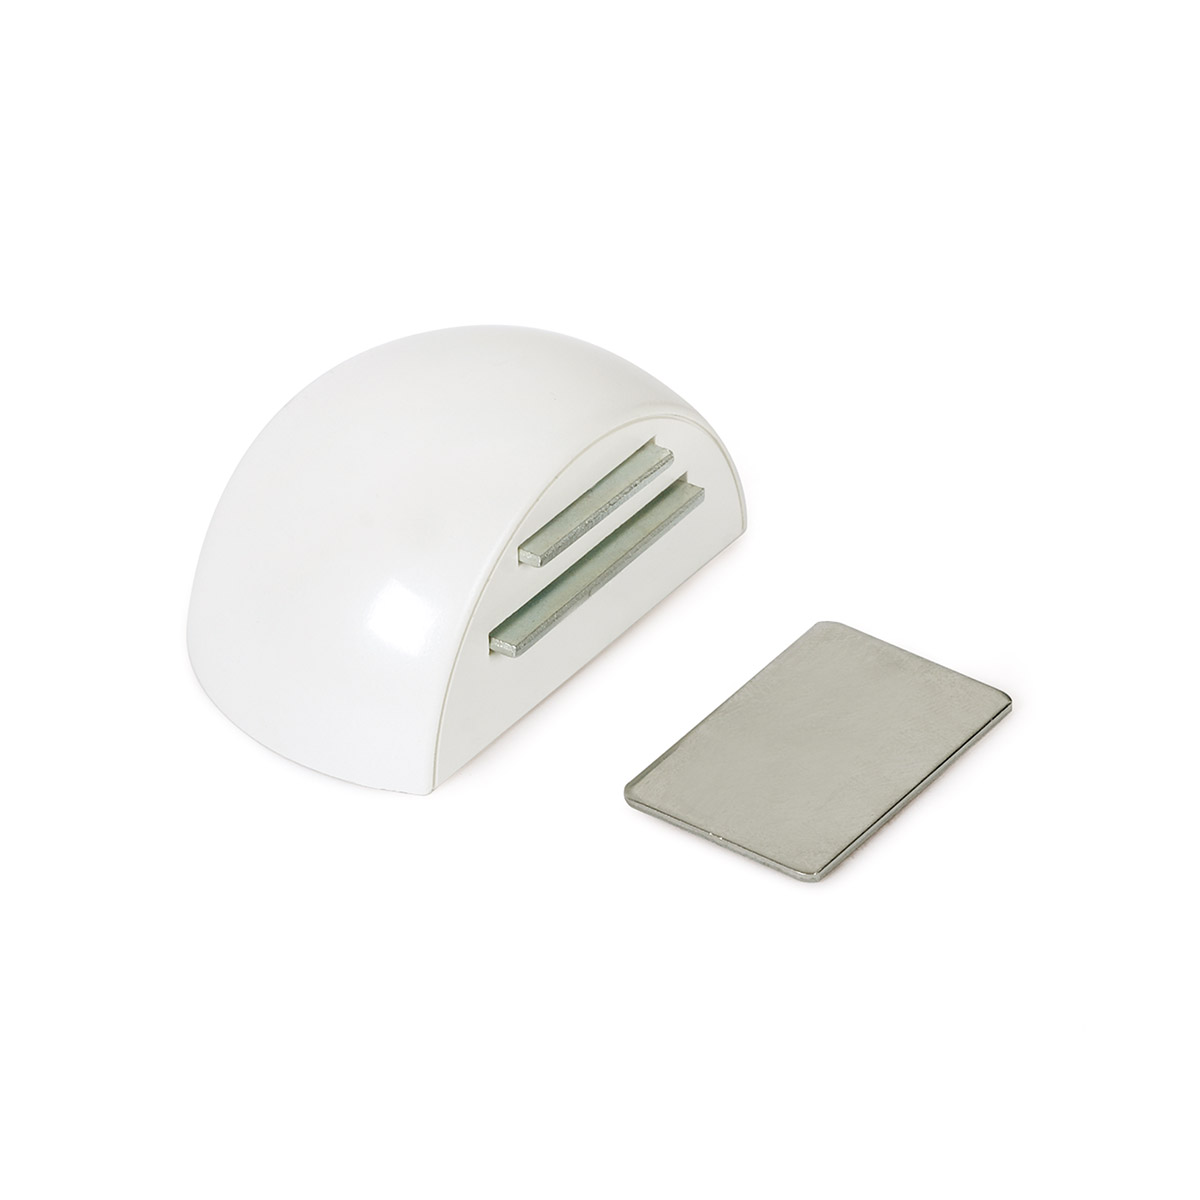 Retenedor de puerta con imán adhesivo con acabado blanco. Dimensiones: 51x39x26 mm